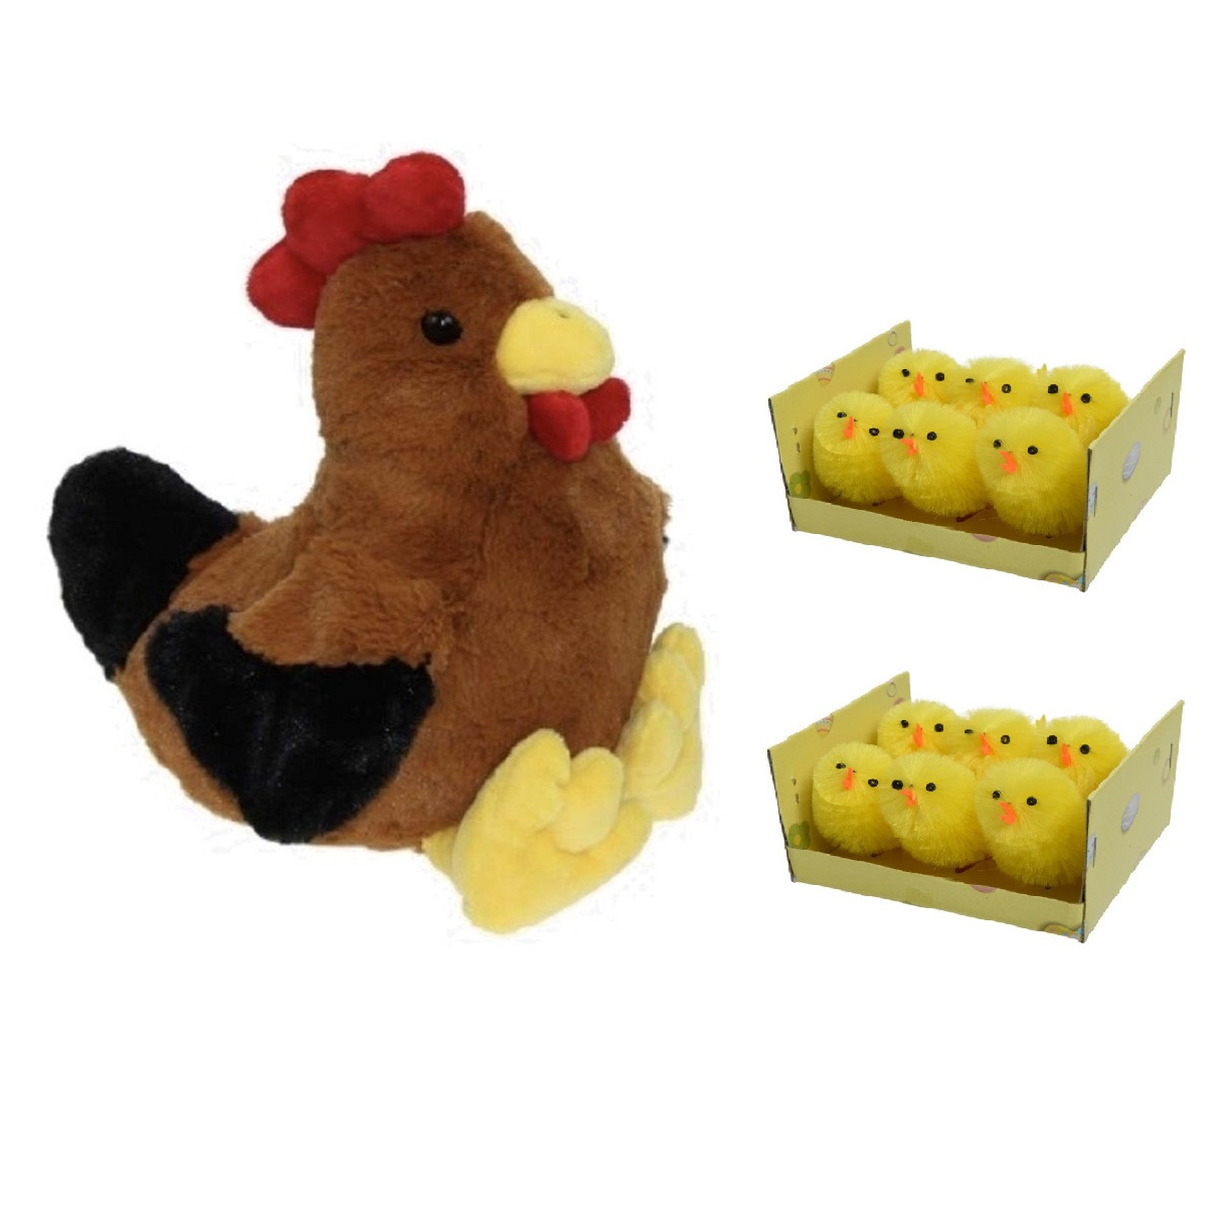 Pluche bruine kippen-hanen knuffel van 25 cm met 12x stuks mini kuikentjes 4 cm